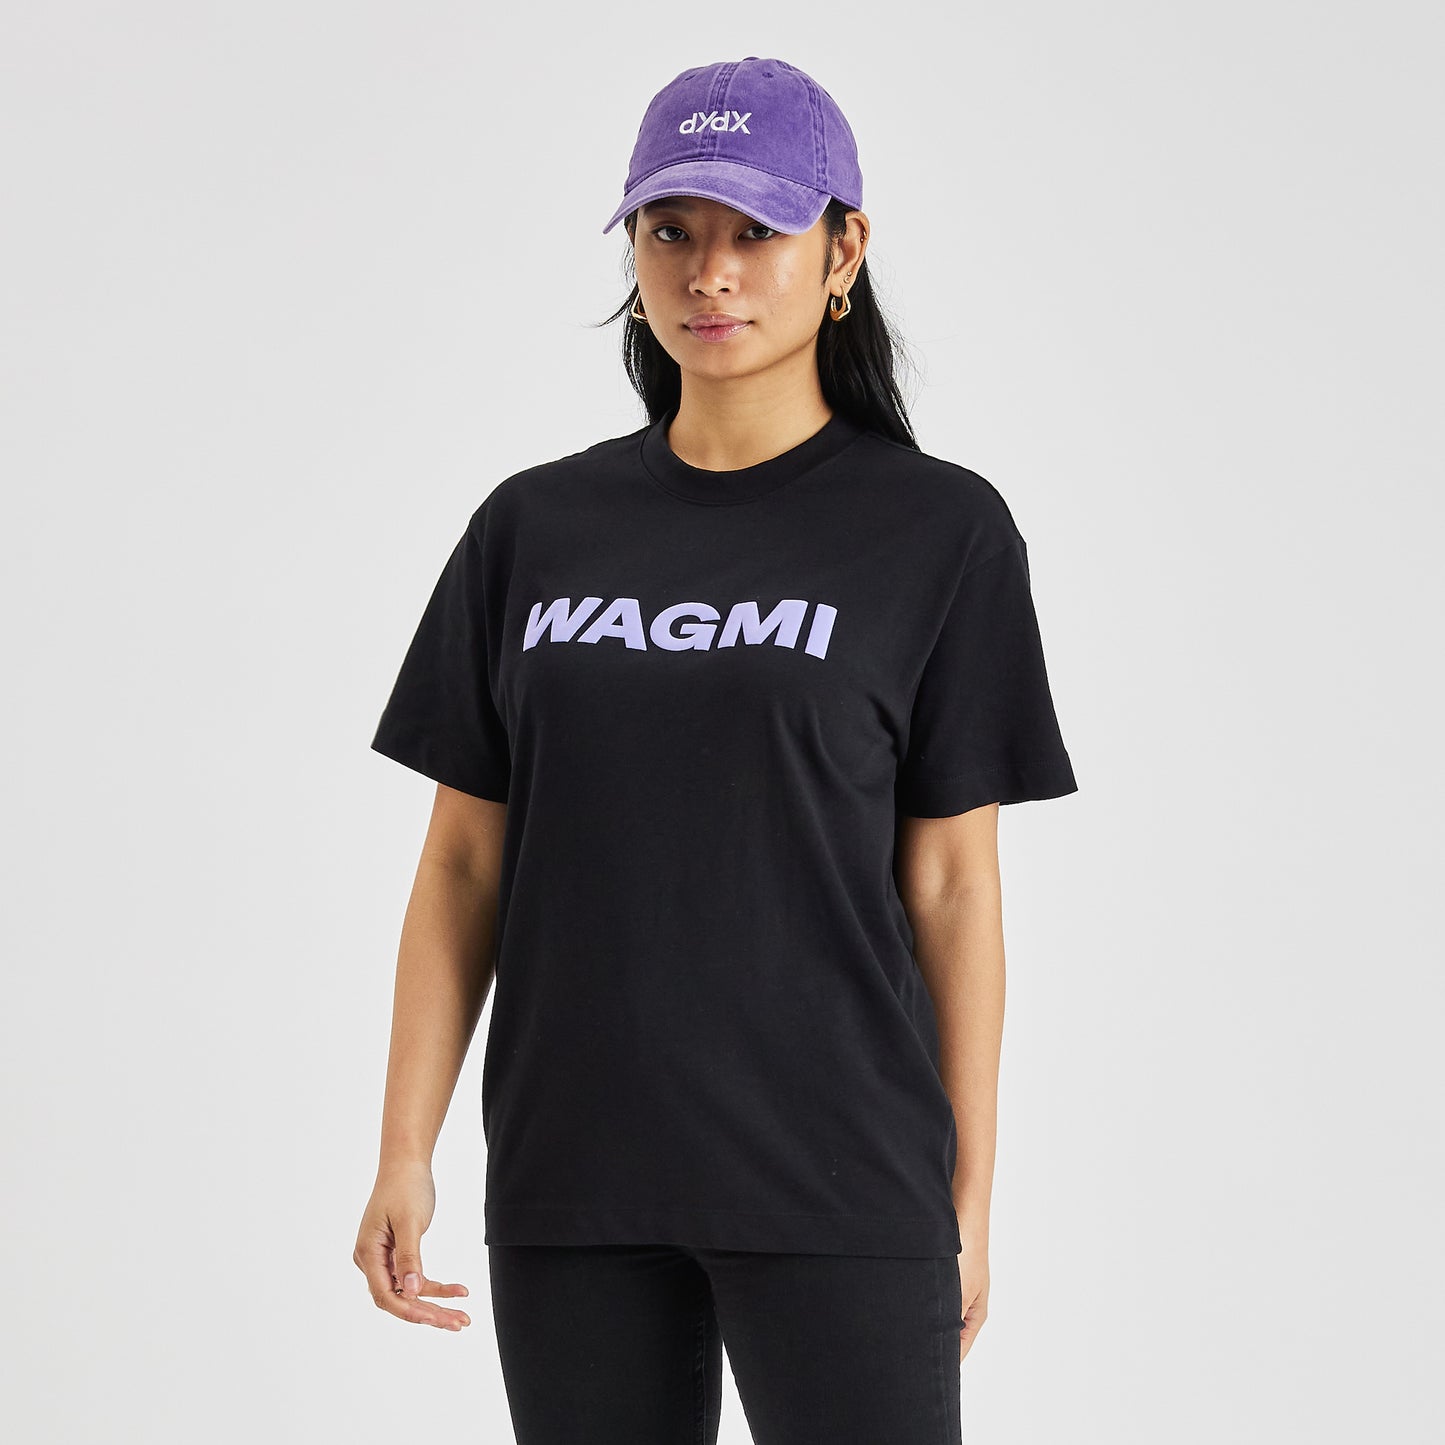 WAGMI T-Shirt